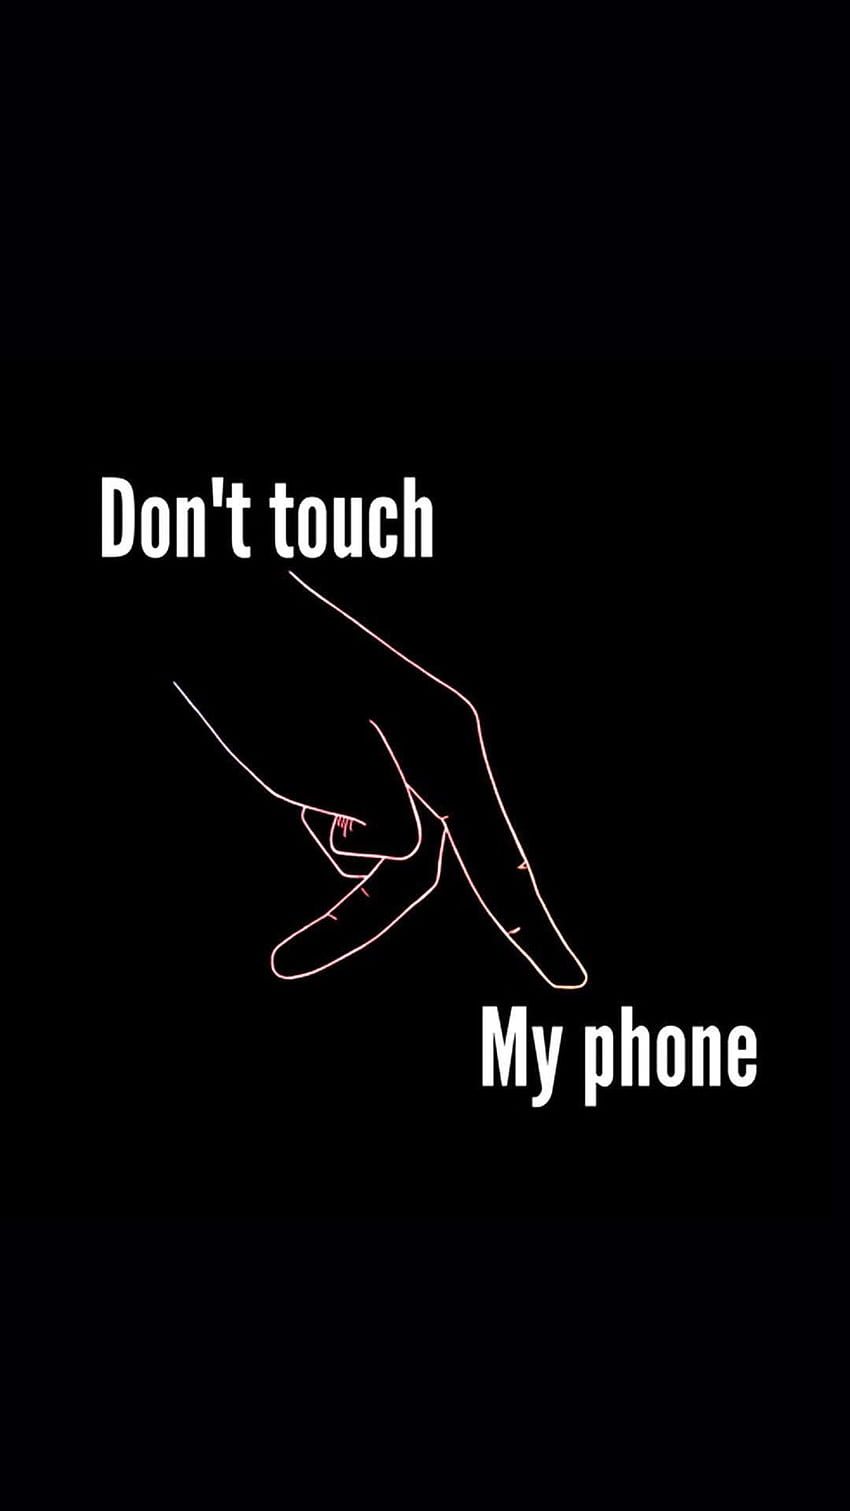 私の電話に触れないでください 指、私の電話、指に触れないでください HD電話の壁紙